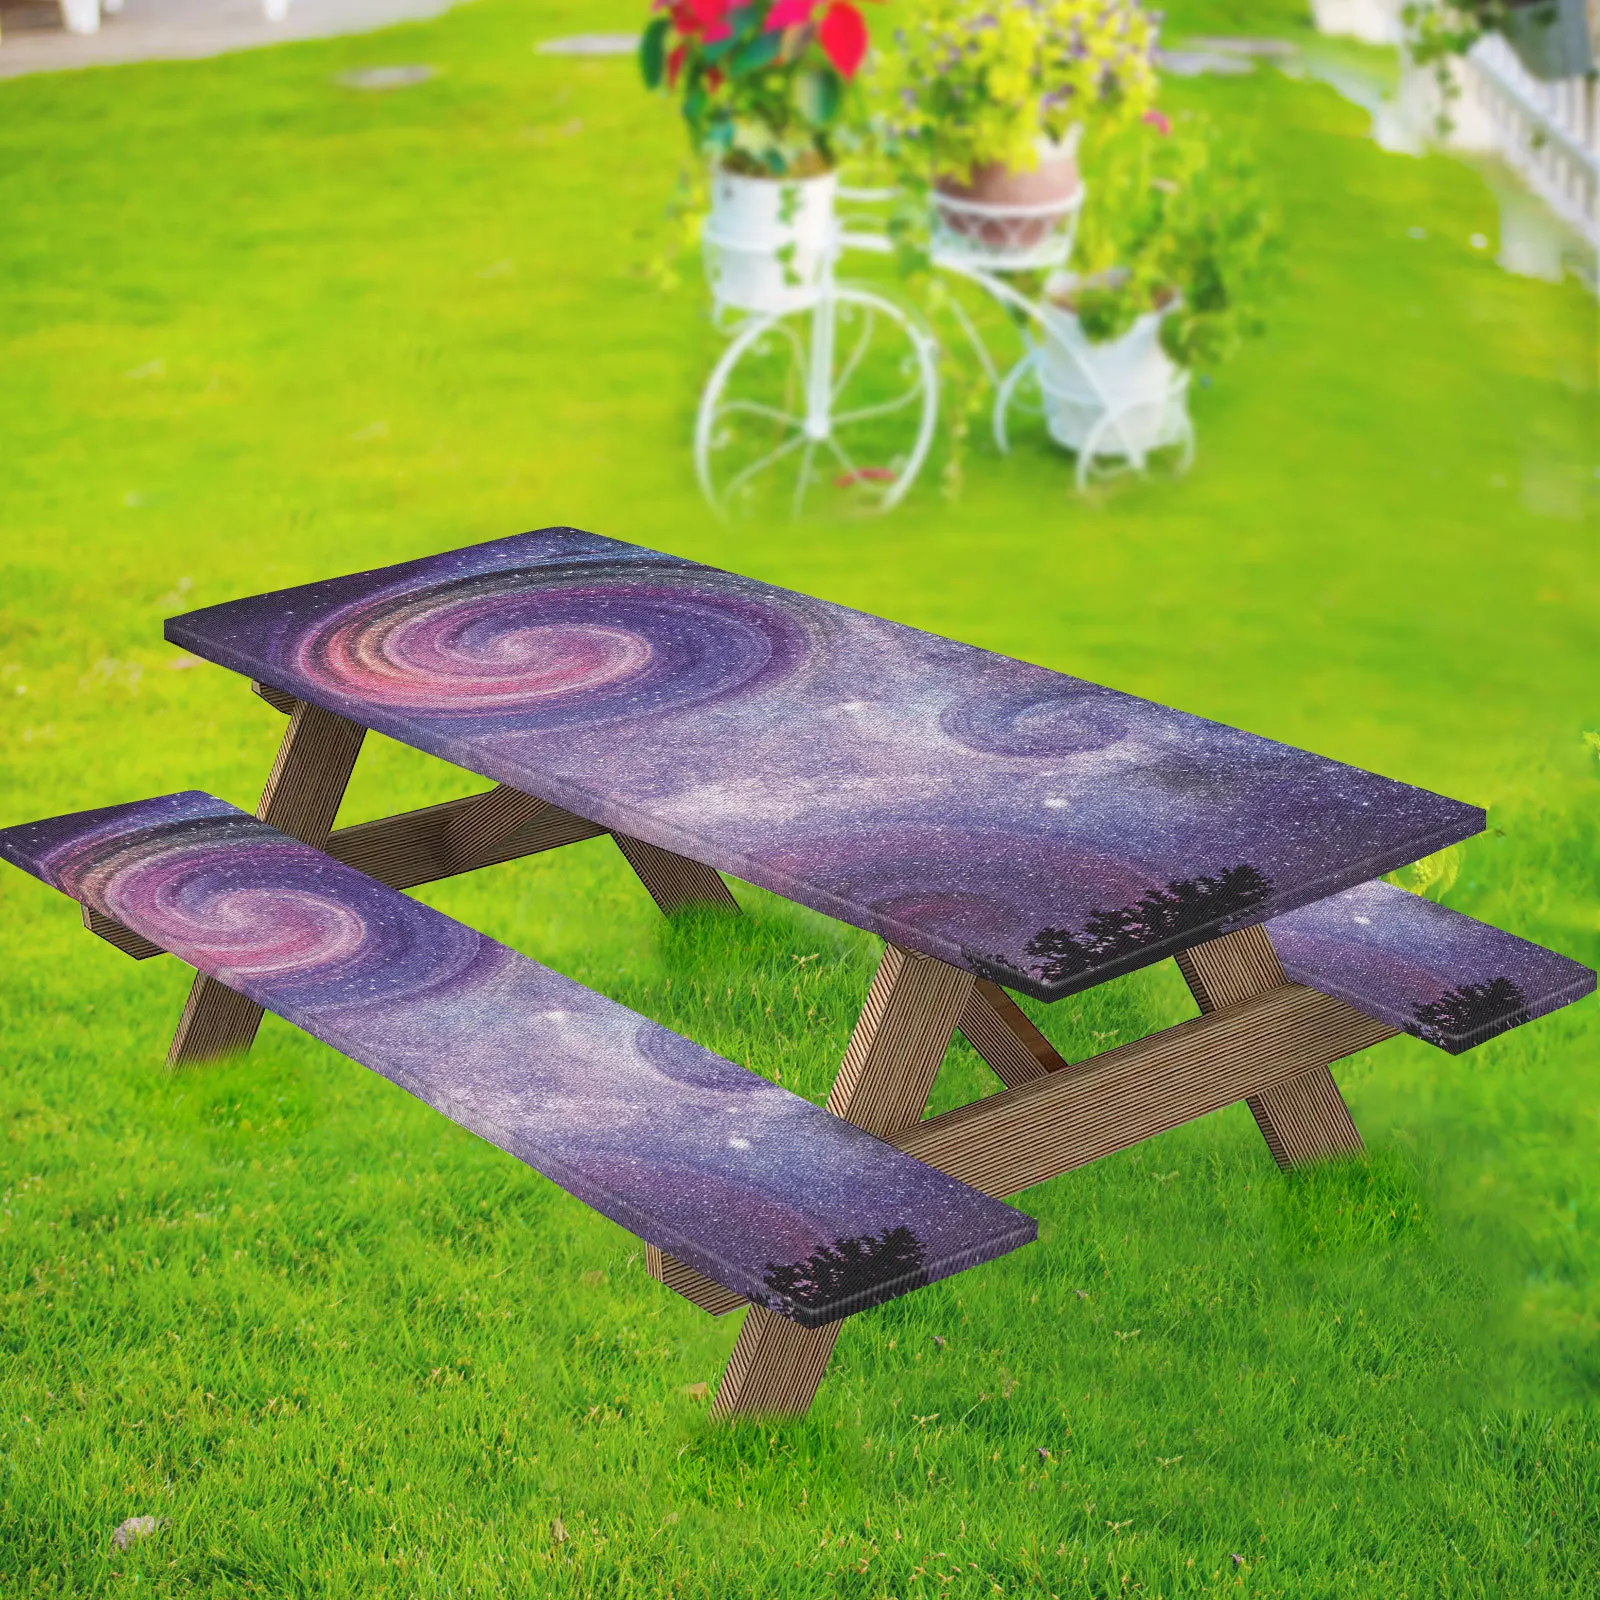 

Скатерти Starry Sky для пикника, набор из 3 предметов, водонепроницаемые прилегающие прямоугольные скатерти для обеда, для улицы